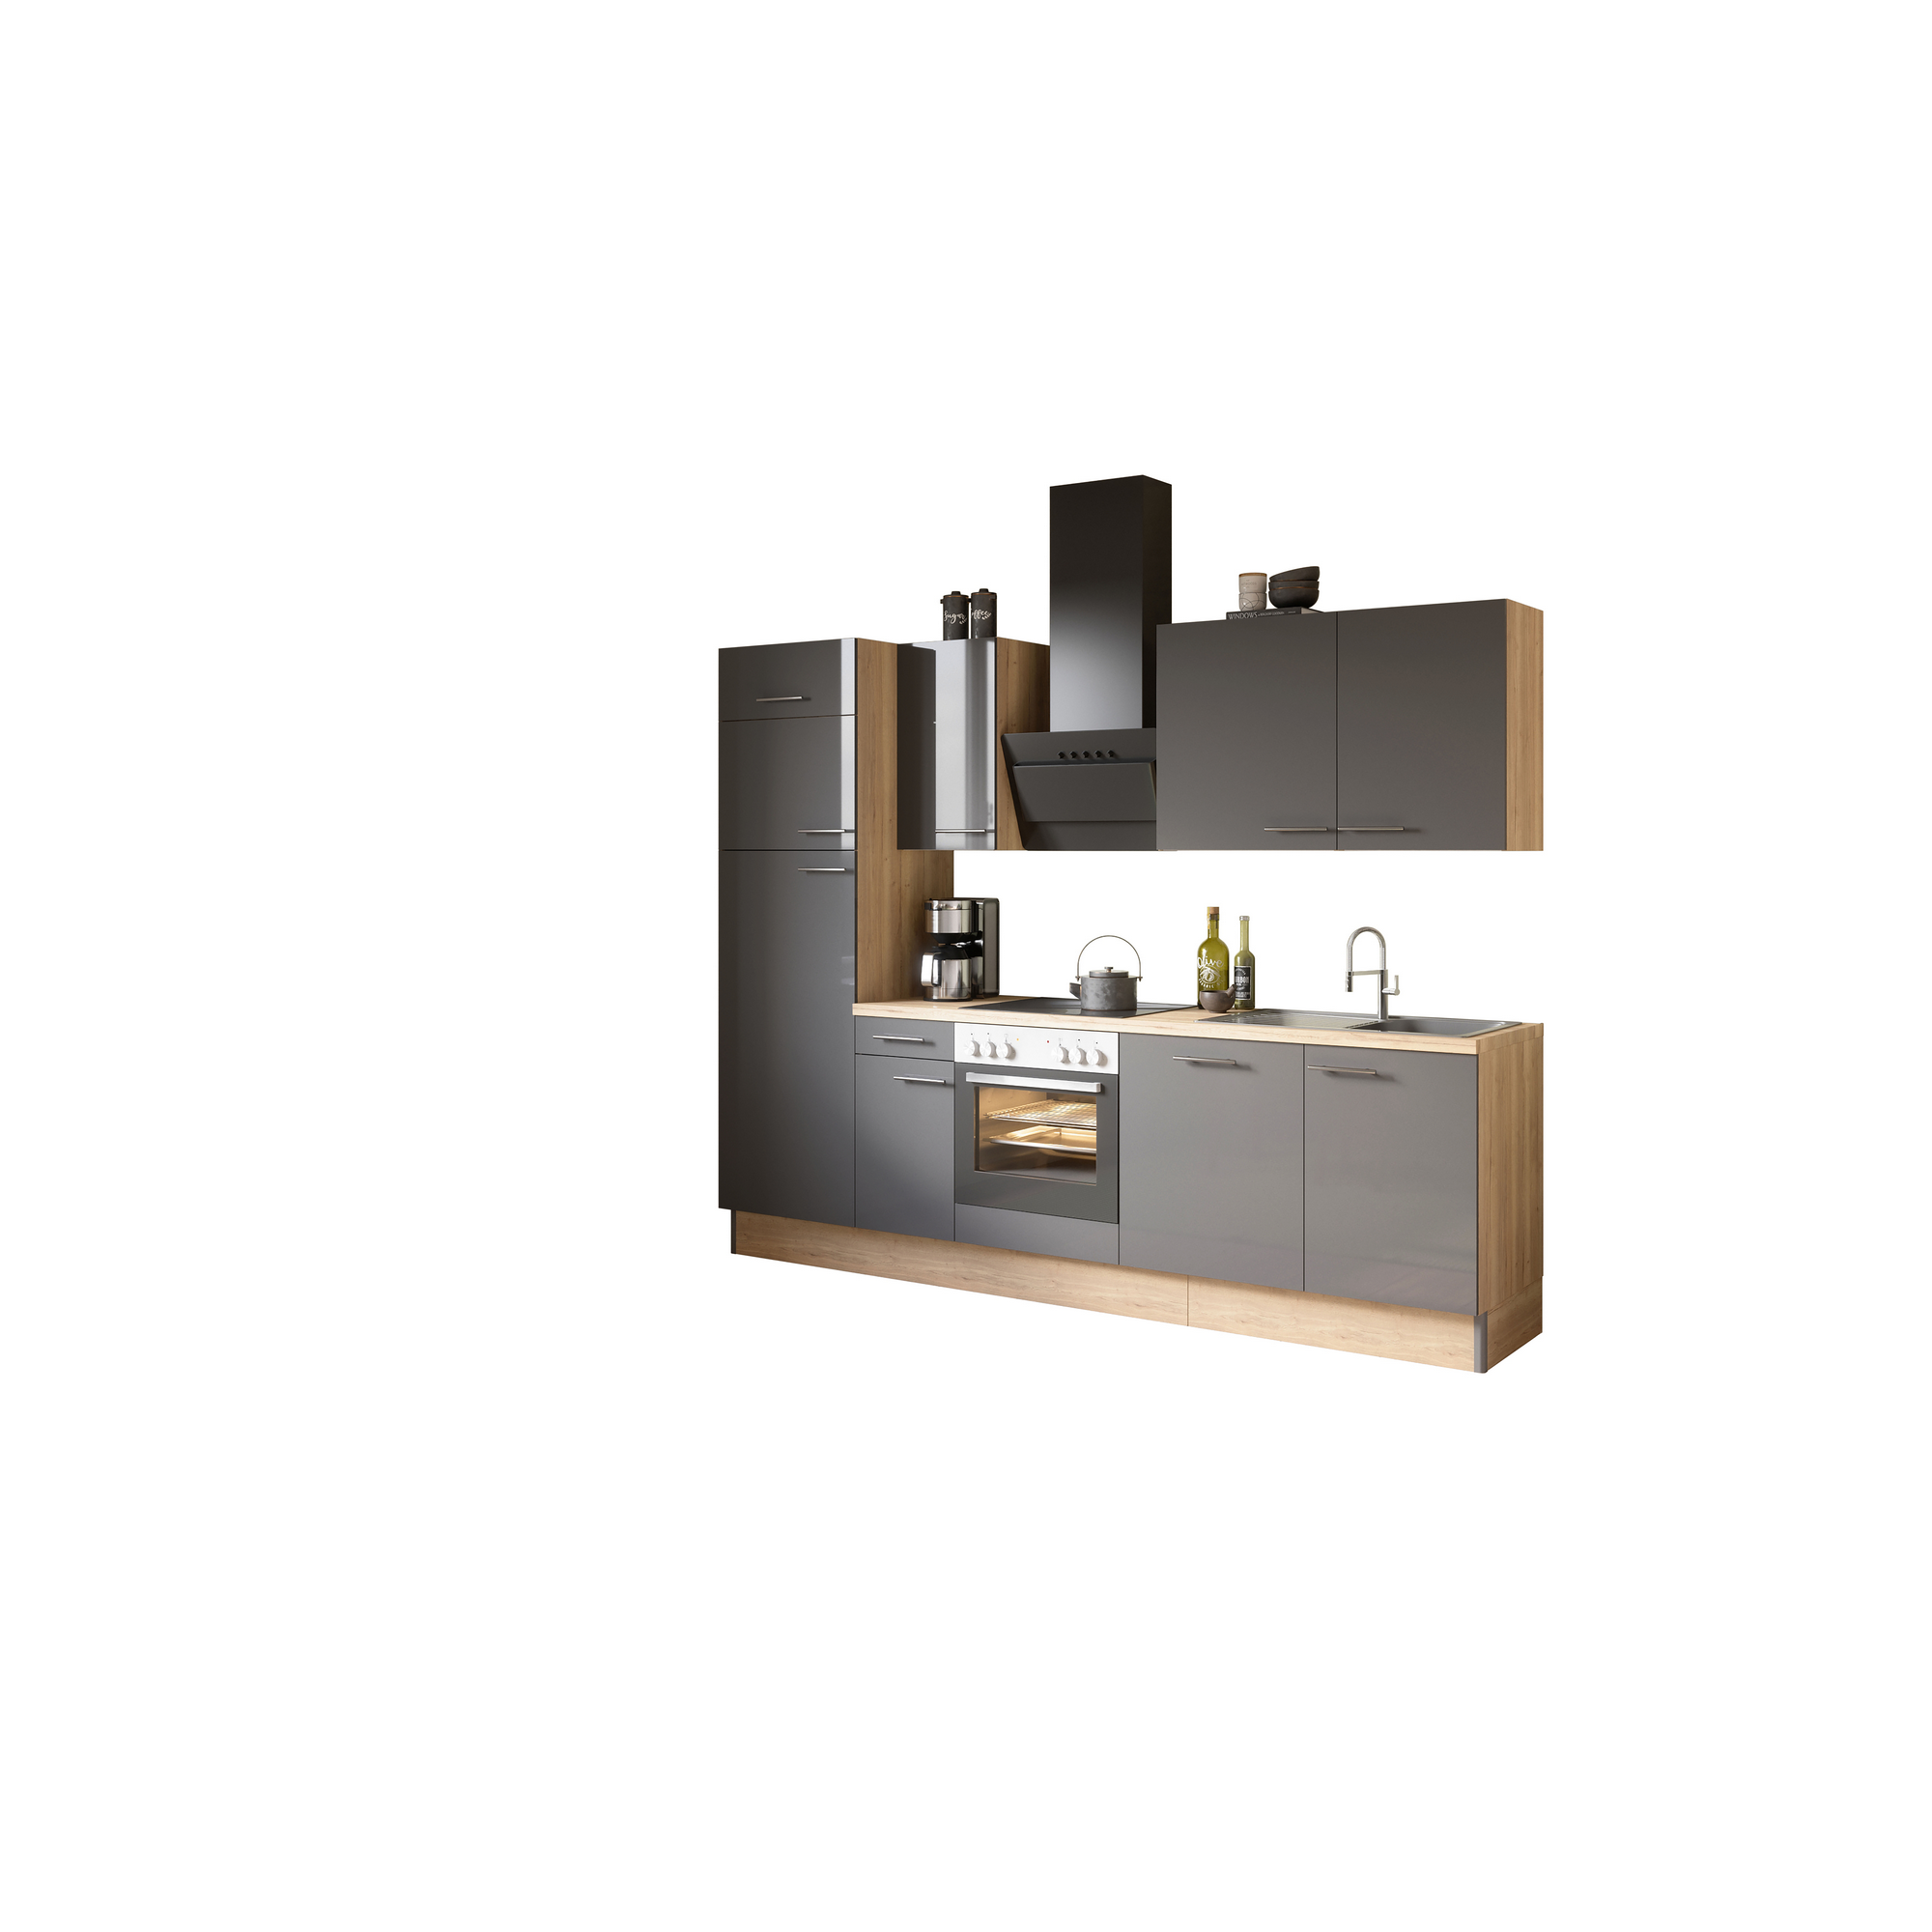 Küchenzeile mit E-Geräten 'OPTIkoncept Jonte984' anthrazit/eichefarben 270 cm + product picture